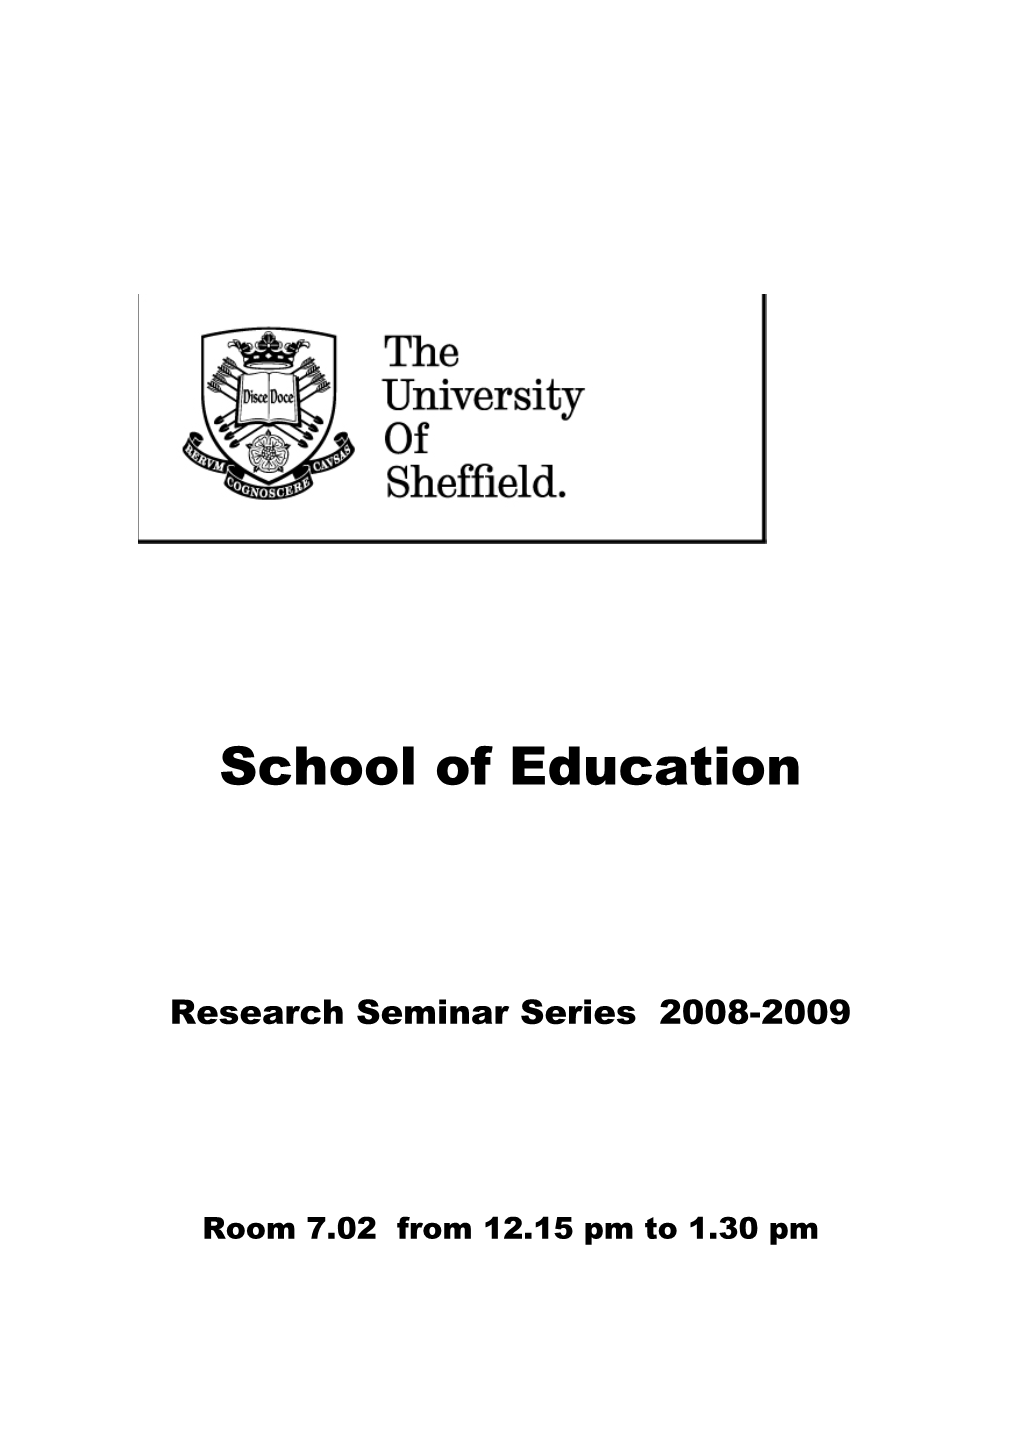 Research Seminar Series 2008-2009